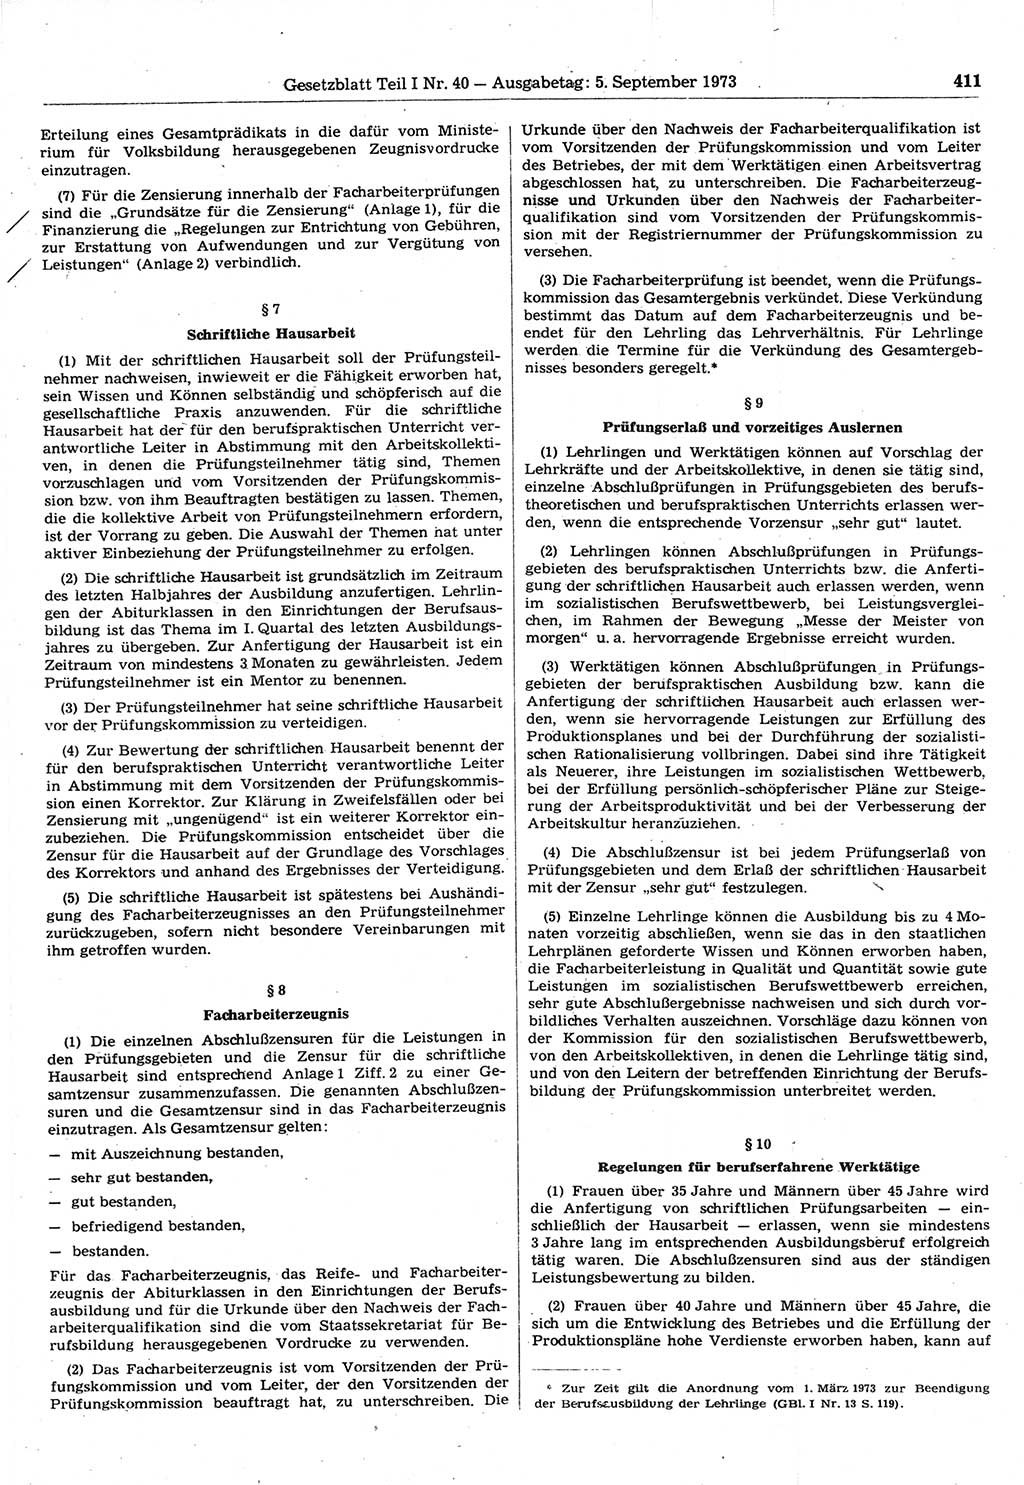 Gesetzblatt (GBl.) der Deutschen Demokratischen Republik (DDR) Teil Ⅰ 1973, Seite 411 (GBl. DDR Ⅰ 1973, S. 411)